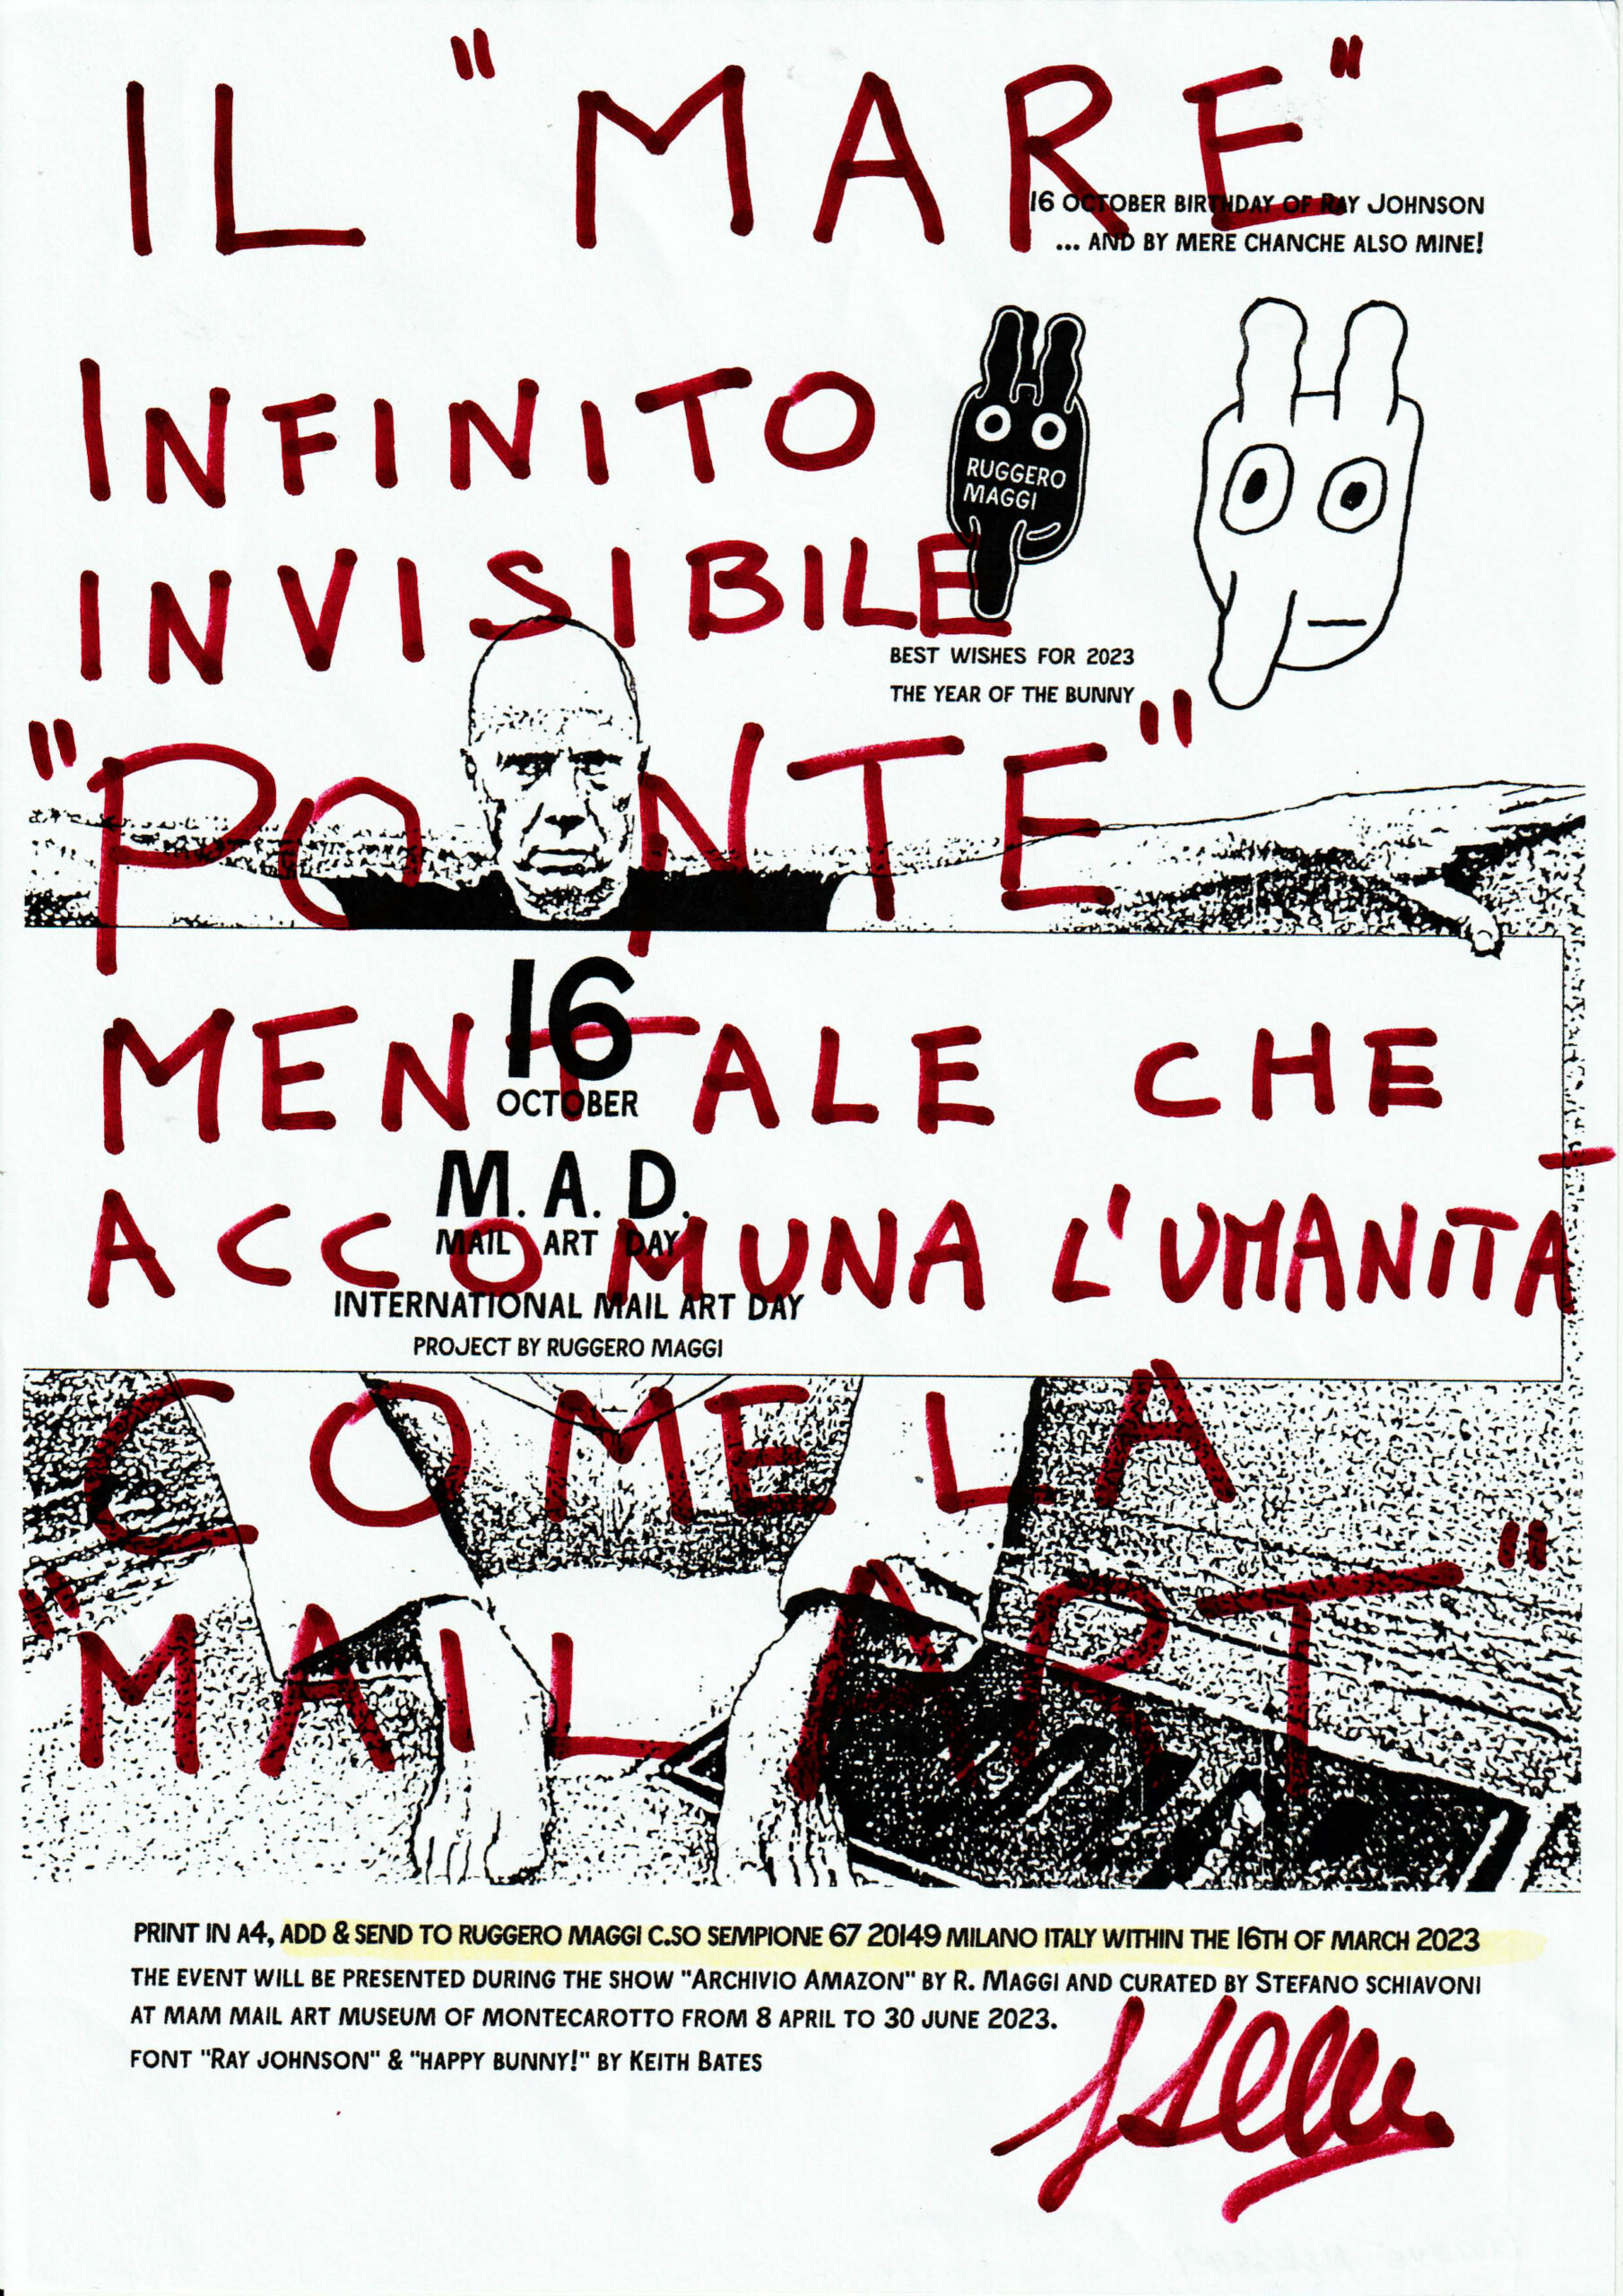 M.A.D. - Mail Art Day: Giosuè Allegrini, Italy